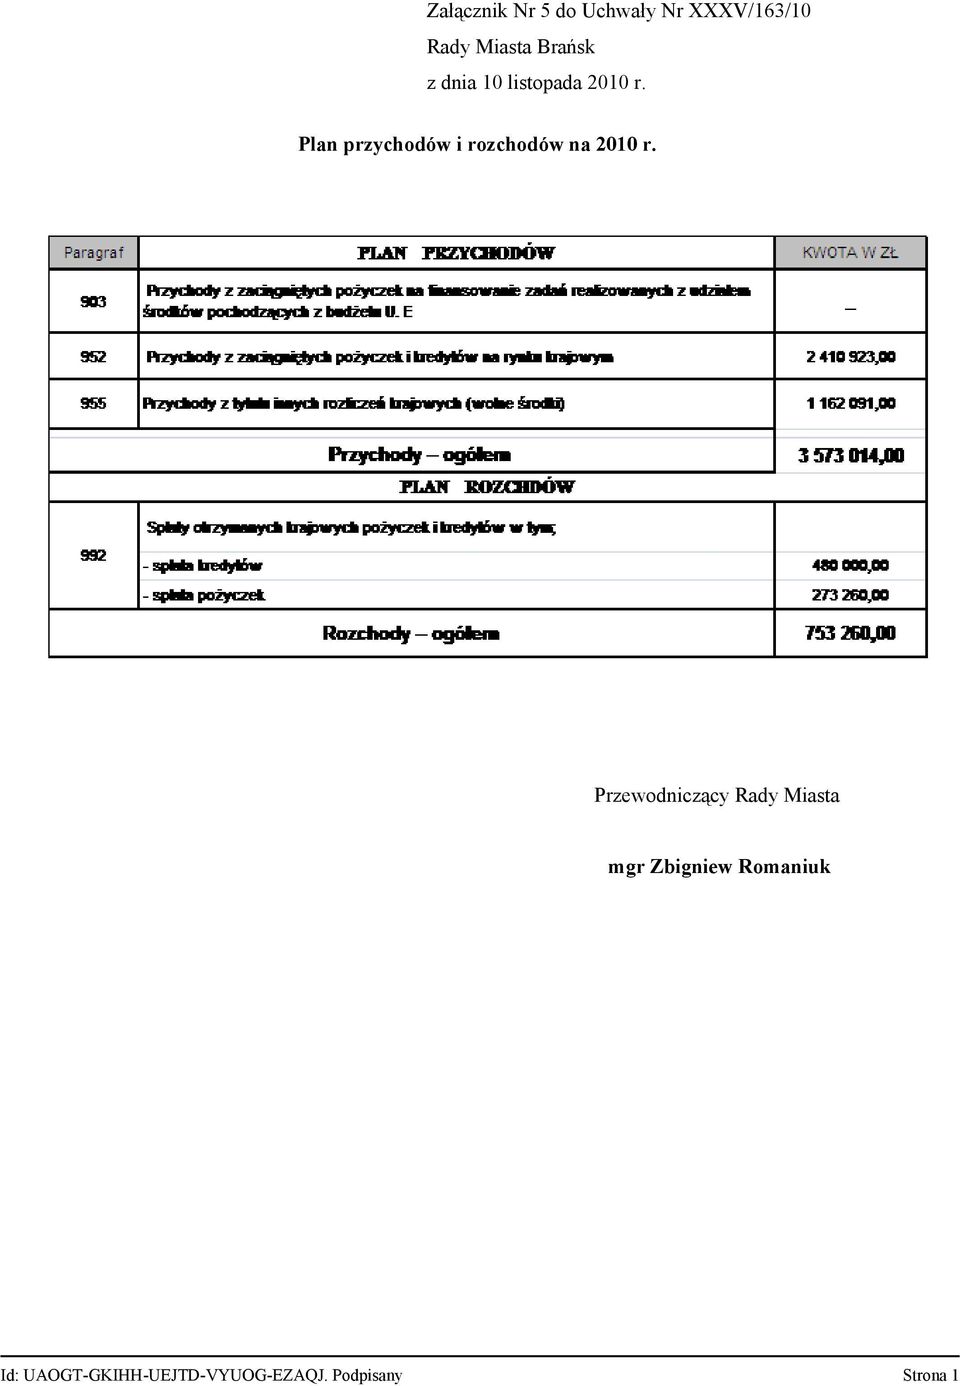 Plan przychodów i rozchodów na 2010 r.